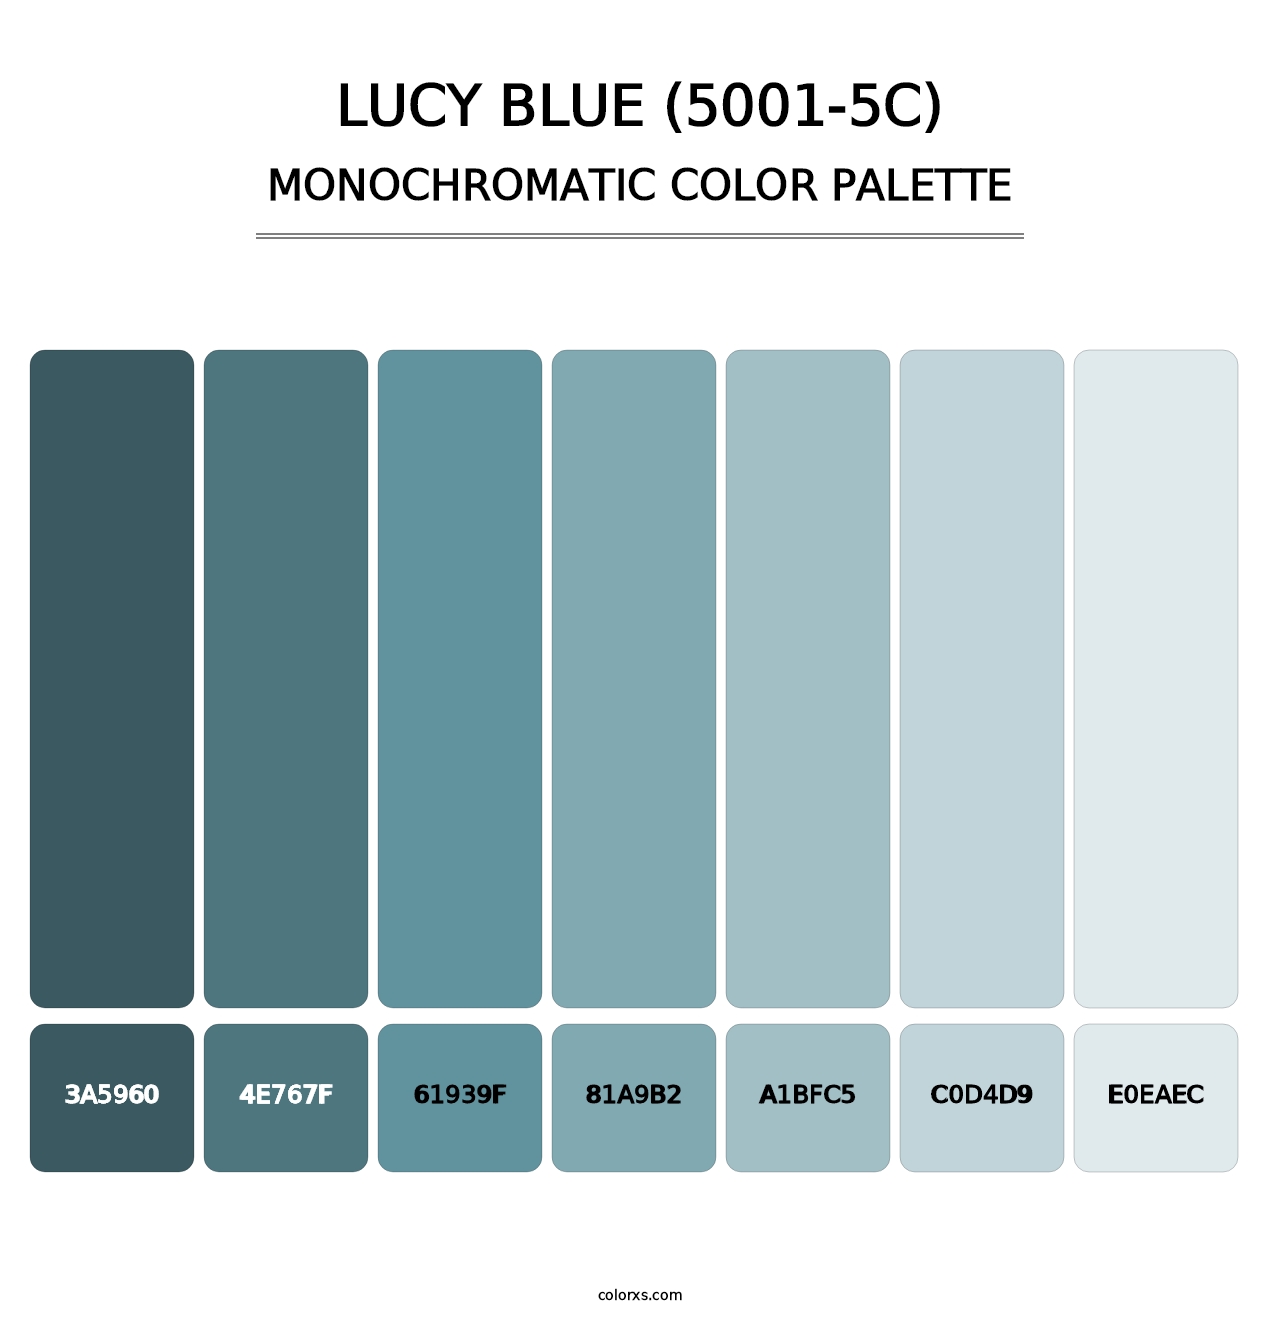 Lucy Blue (5001-5C) - Monochromatic Color Palette